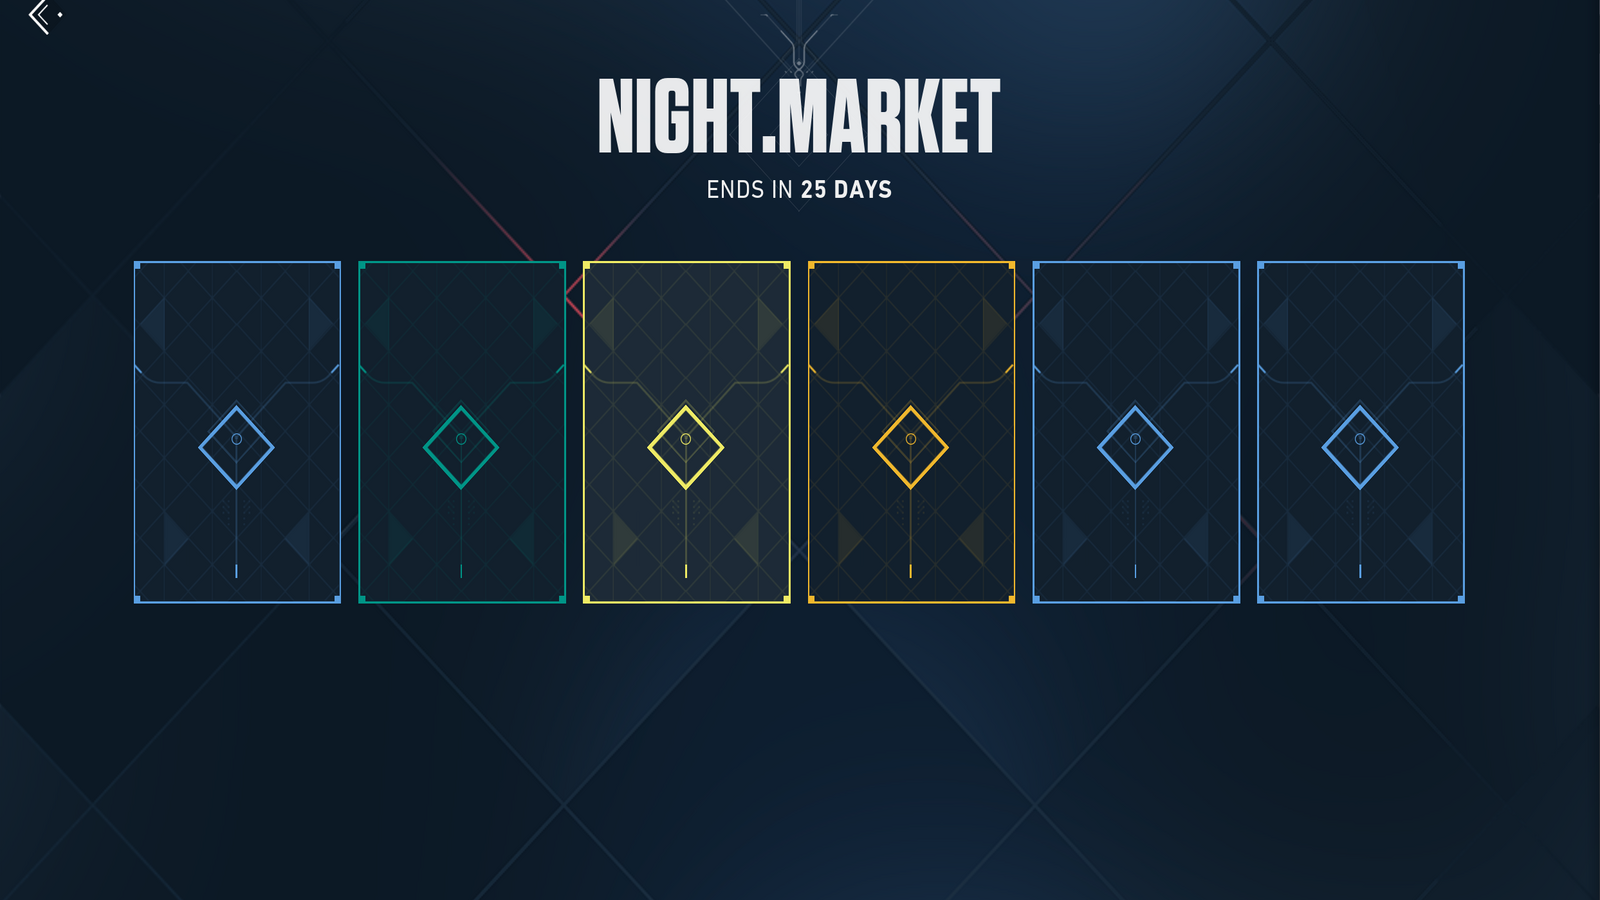 Una captura de pantalla de un nuevo mercado nocturno, con cada piel aún oculta detrás de una tarjeta de revelación